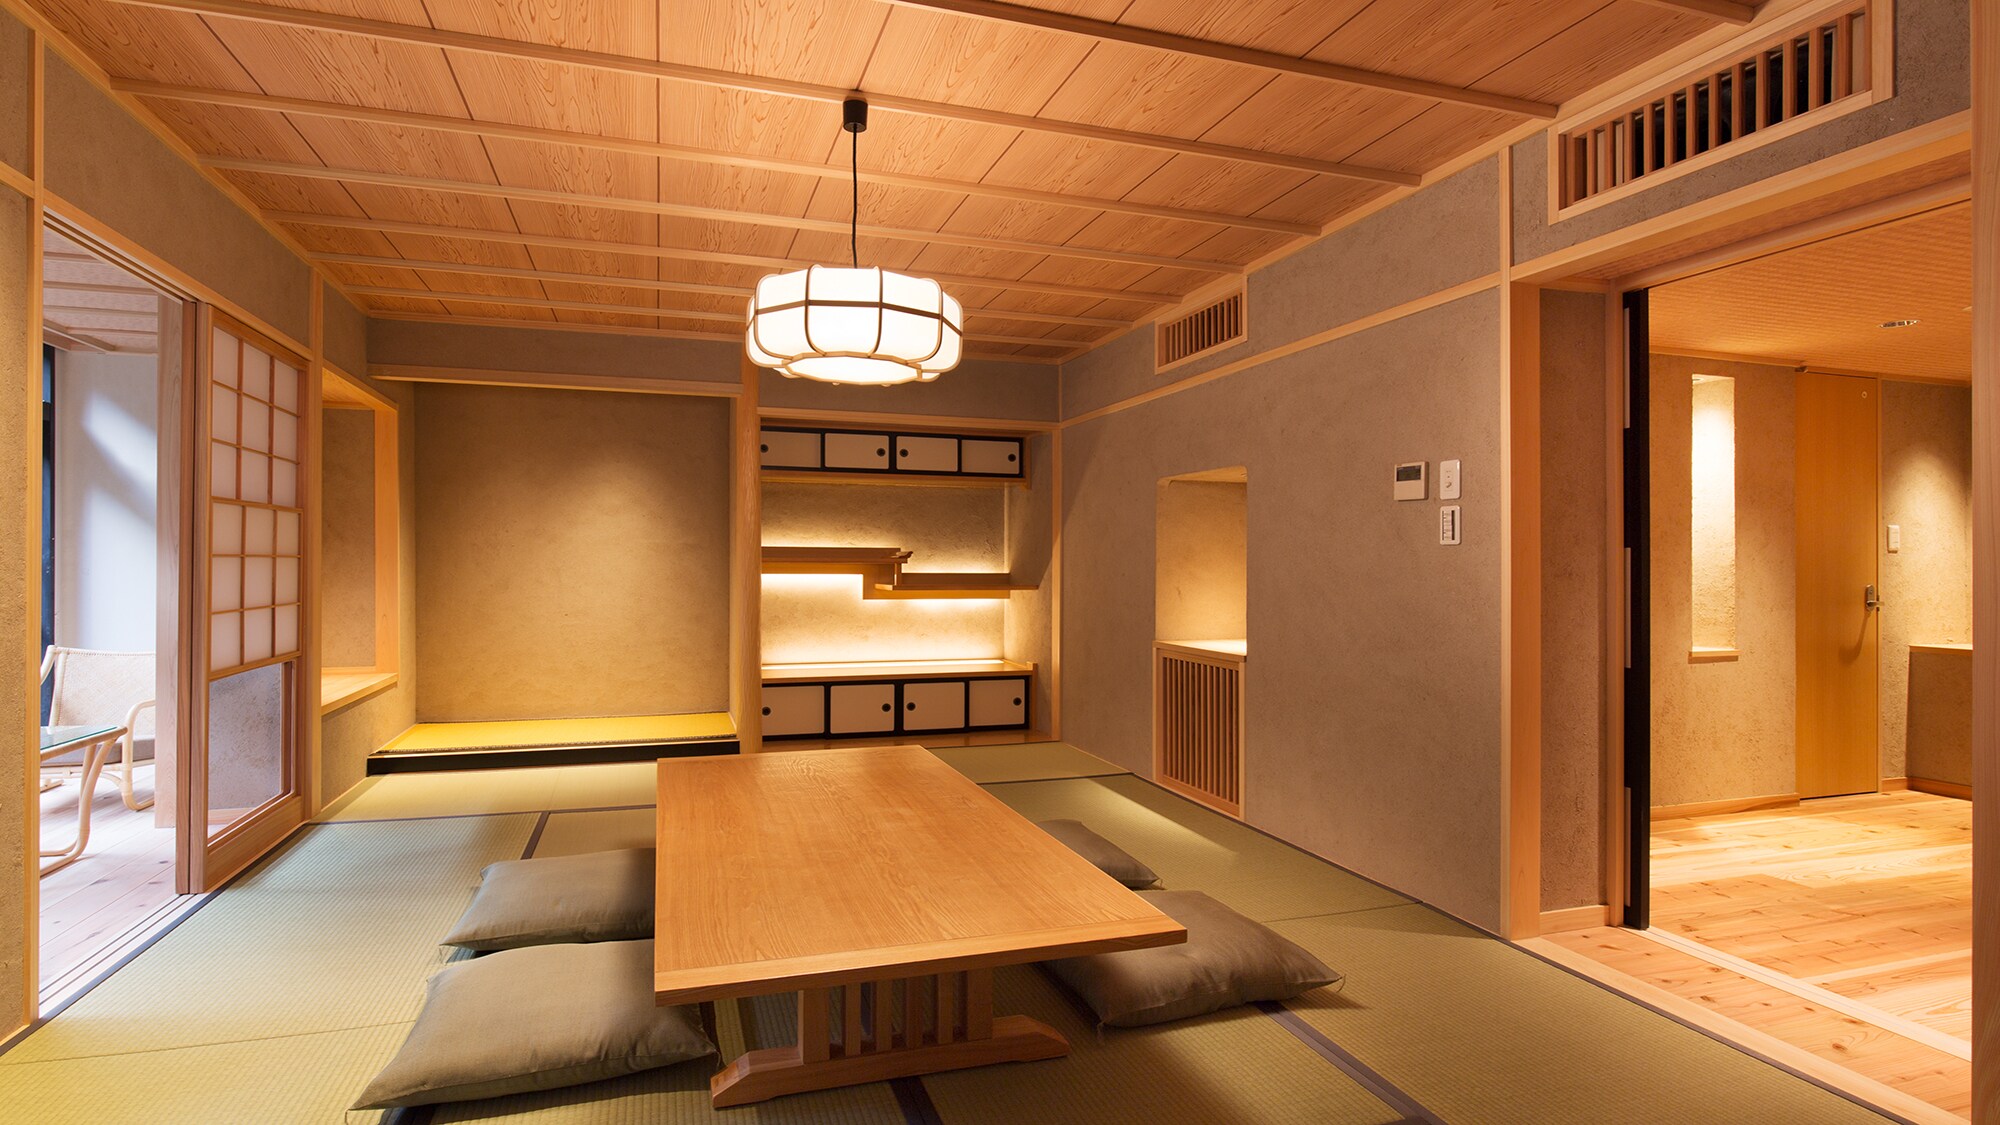 넓은 일본식 방 「몽환테이(무겐테이)」의 일례♪